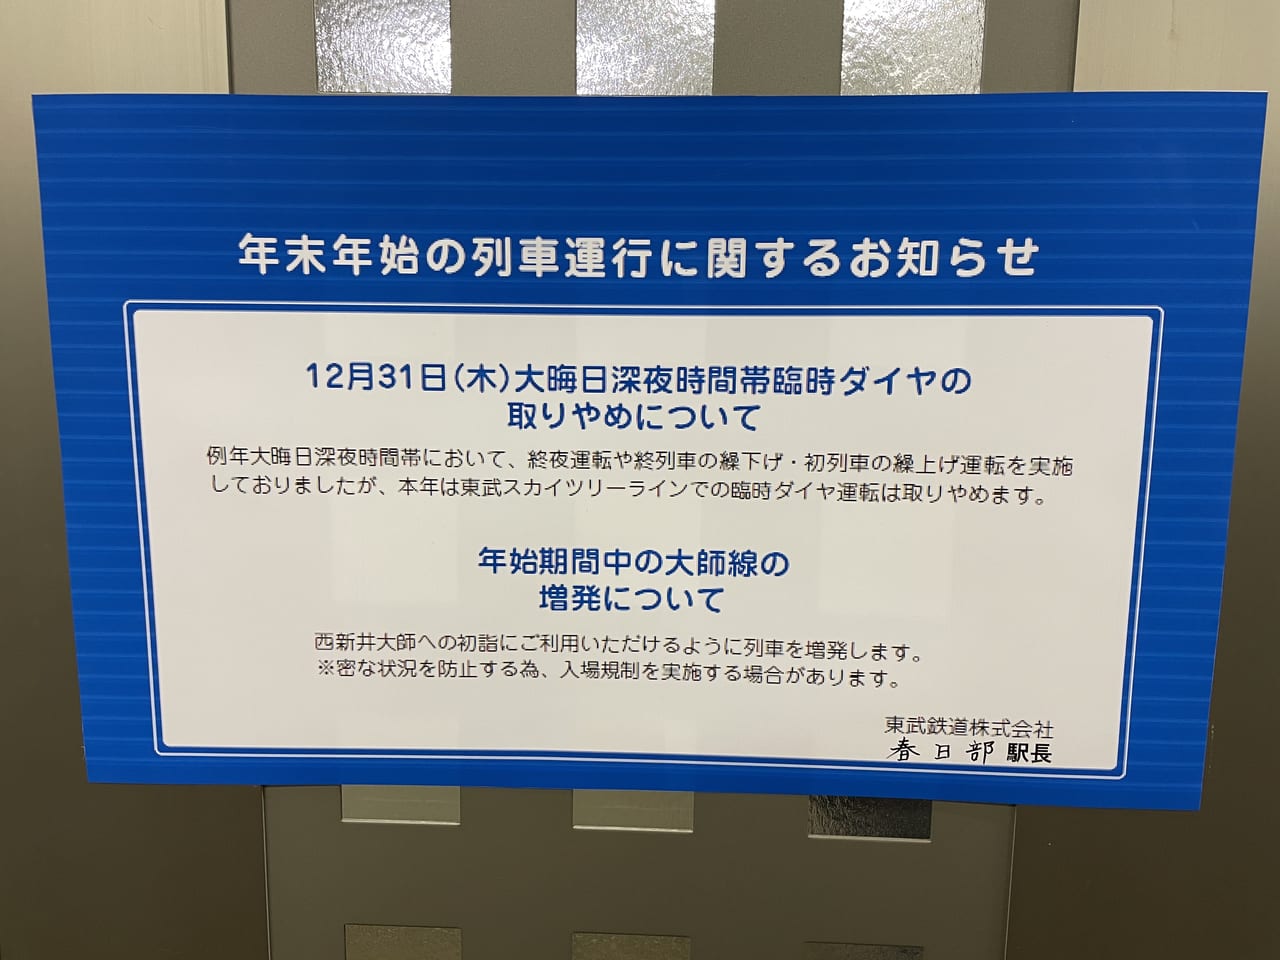 東武スカイツリーラインでの12月31日大晦日臨時ダイヤ運転は取りやめ